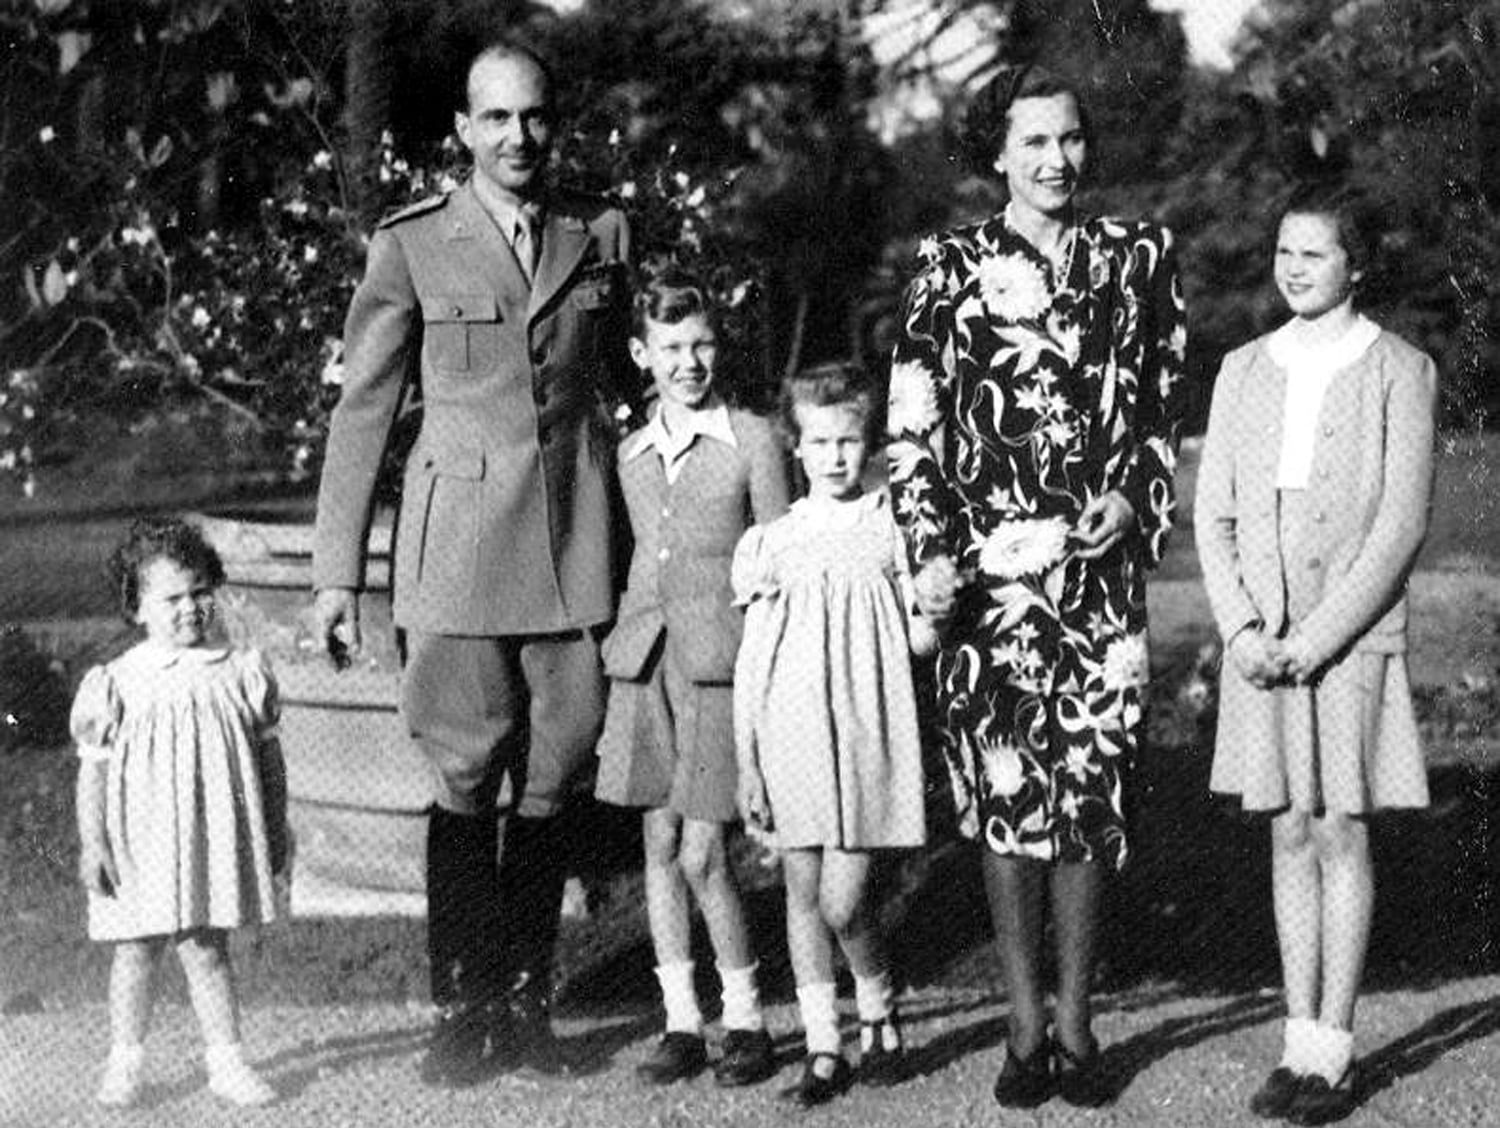 La famiglia reale nel maggio 1946. Da sinistra: la principessa Maria Beatrice (1943), re Umberto II (1904-1983), Vittorio Emanuele, la principessa Maria Gabriella (1940), la regina Maria José (1906-2001) e la principessa Maria Pia (1934).